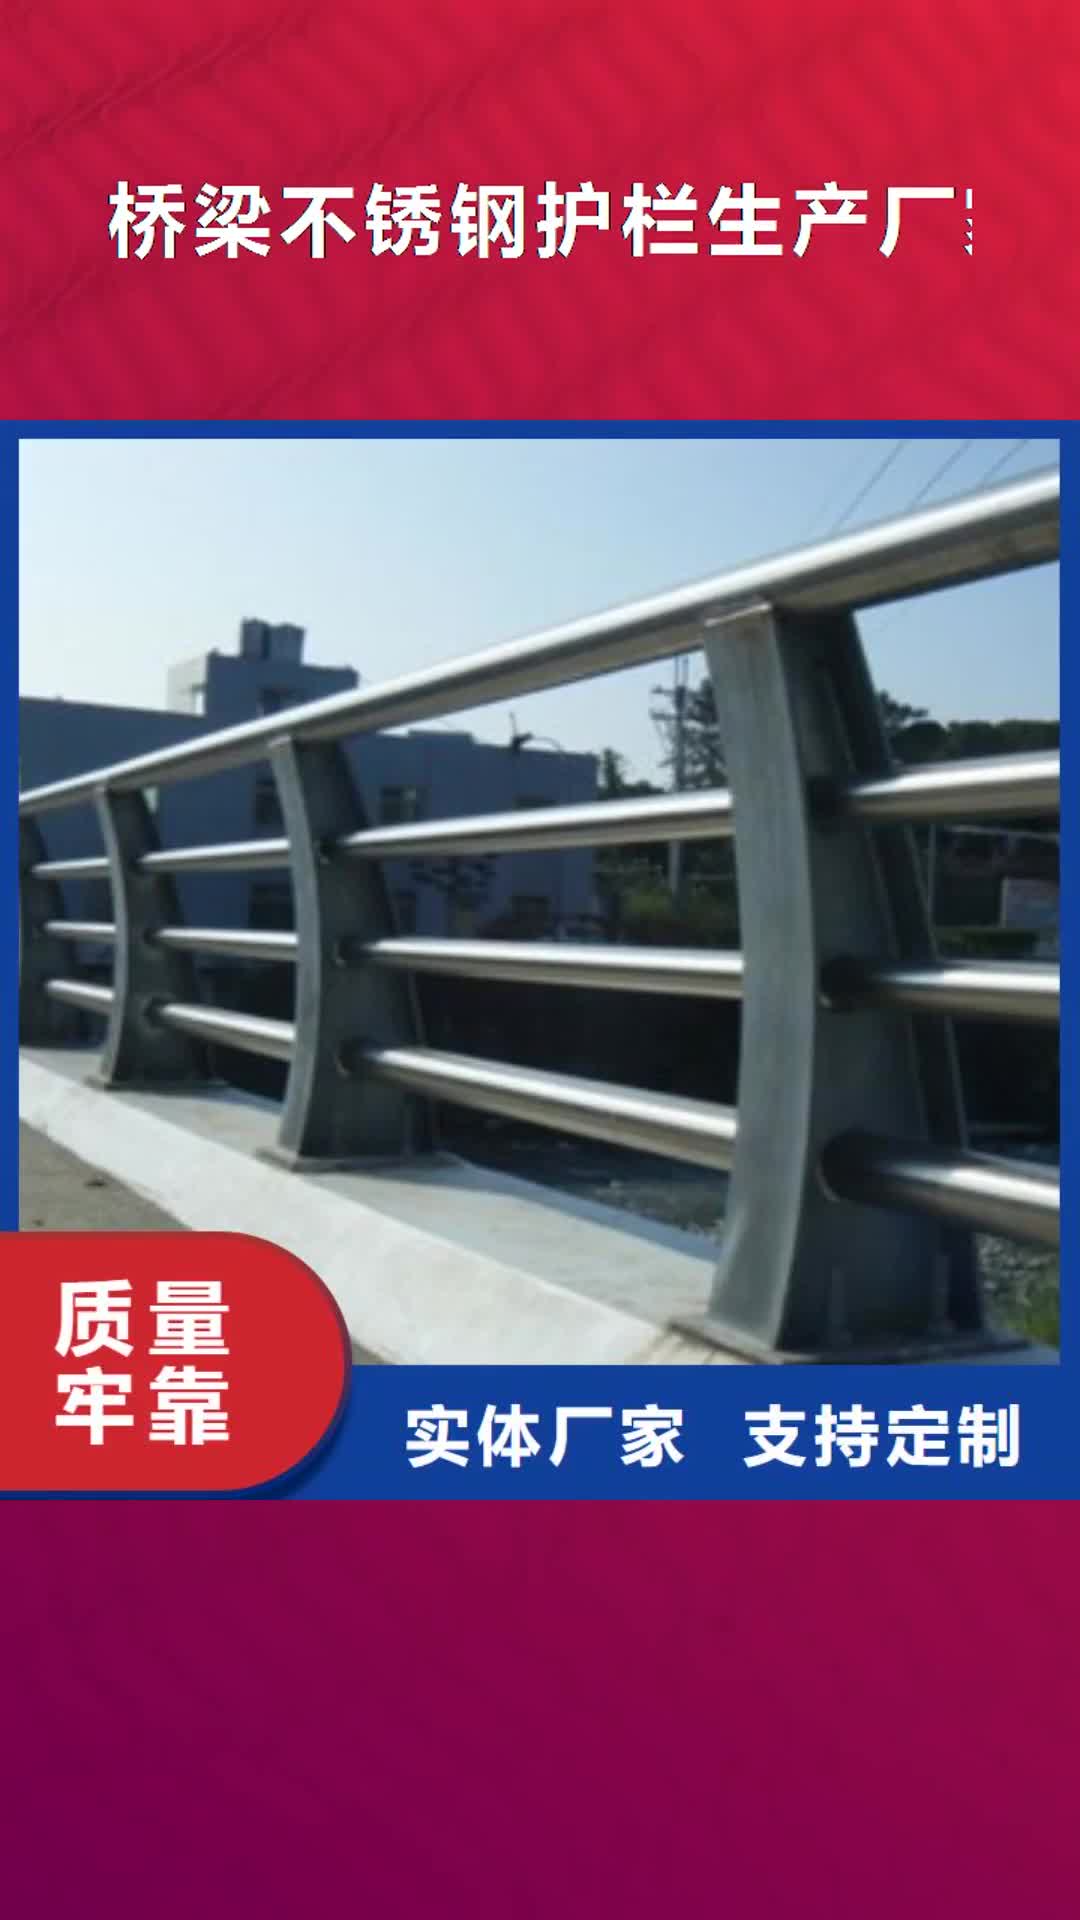 广州 桥梁不锈钢护栏生产厂家,【桥梁灯光护栏】一个起售